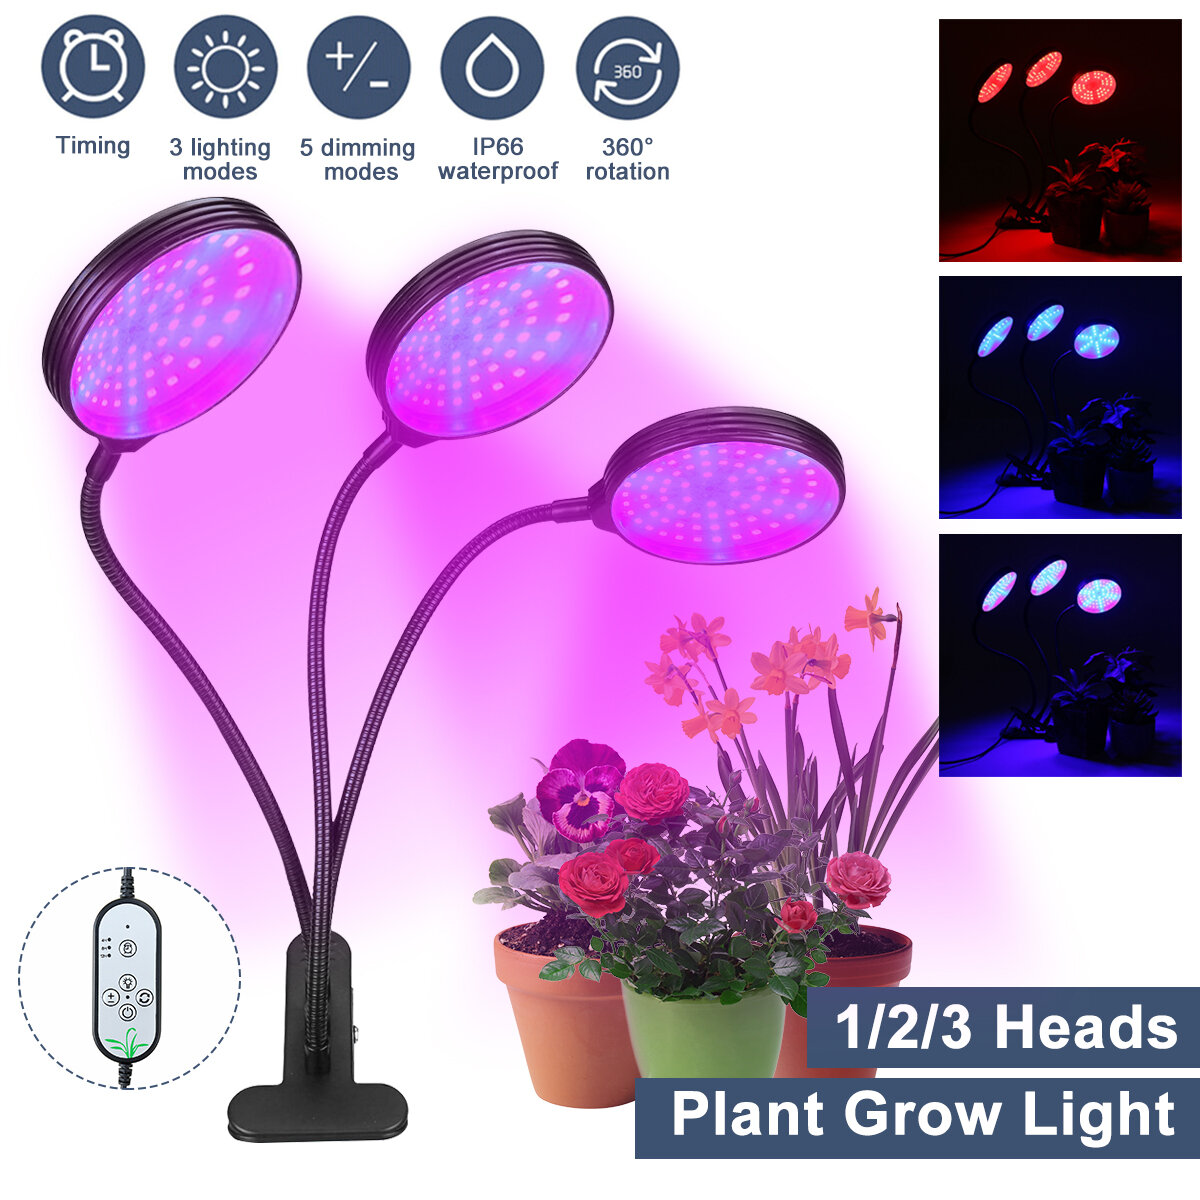 1/2/3 رأس النبات ينمو ضوء رئيس LED مصباح الزراعة المائية الدفيئة حديقة 360 درجة مرنة عكس الضوء داخلي